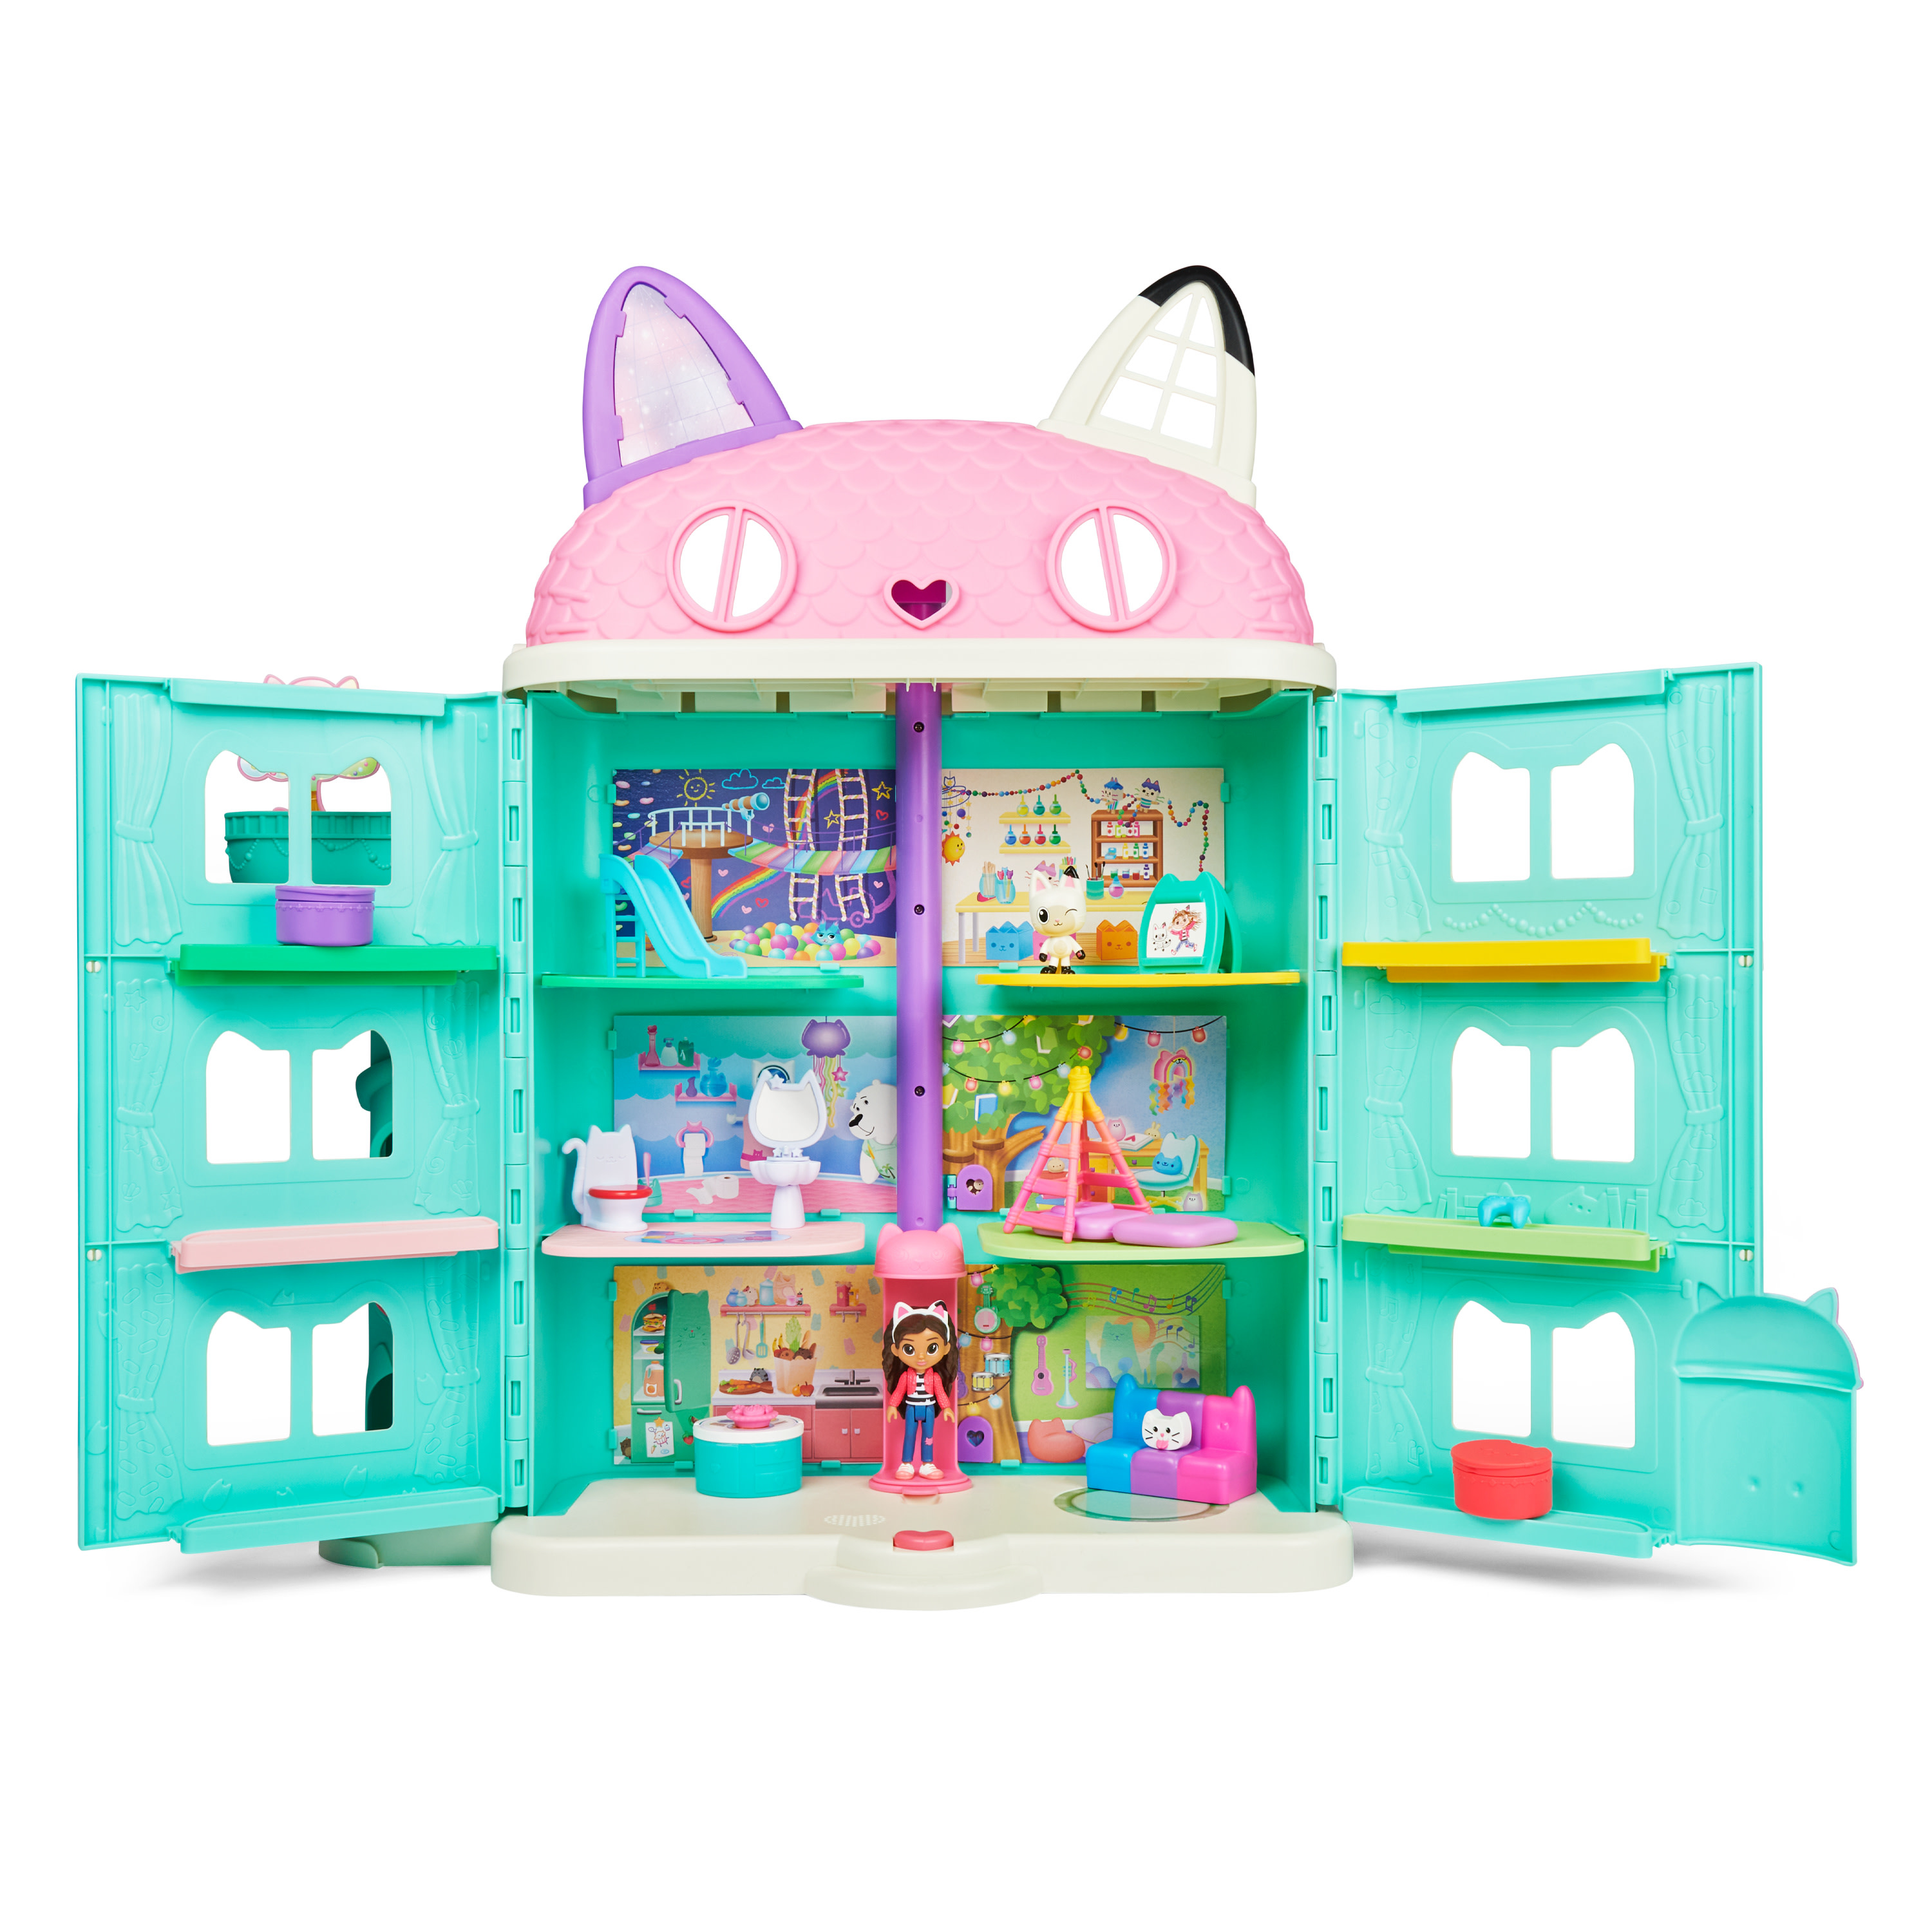 Image of Gabby's Dollhouse , Playset casa delle bambole di Gabby, set con luci e suoni, giochi per bambini dai 3 anni in su